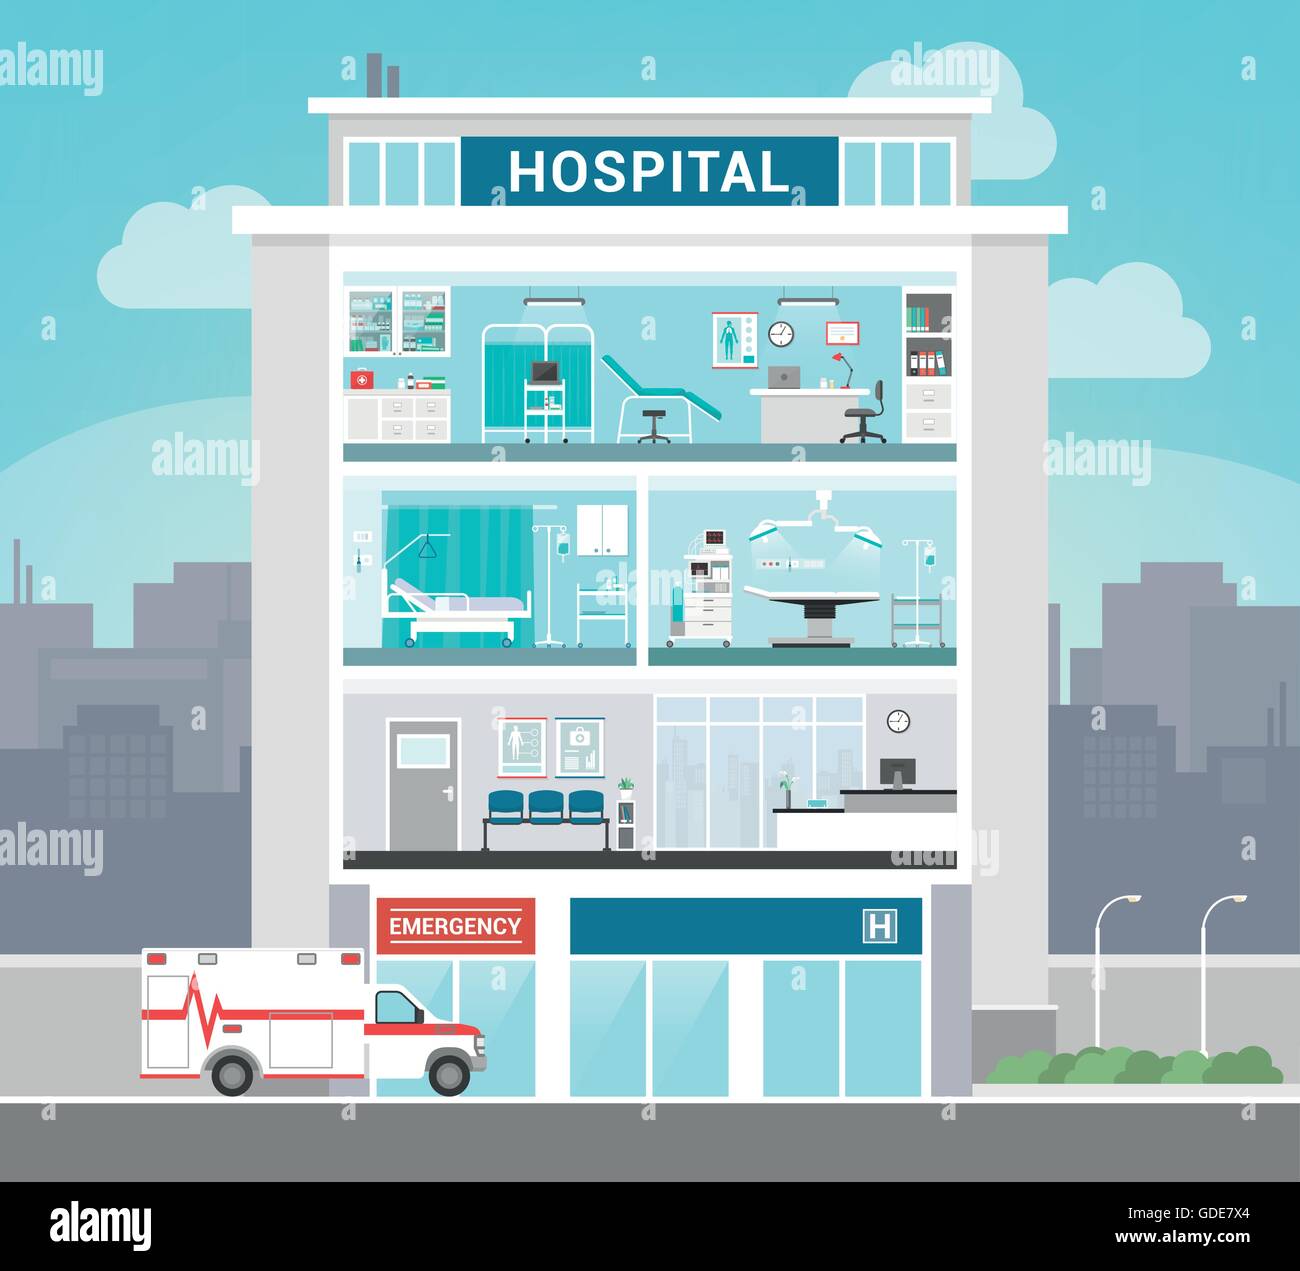 Klinikgebäude mit Abteilungen, Büros, OP-Saal, Ward, Wartezimmer und Rezeption, medizinisches Konzept Stock Vektor